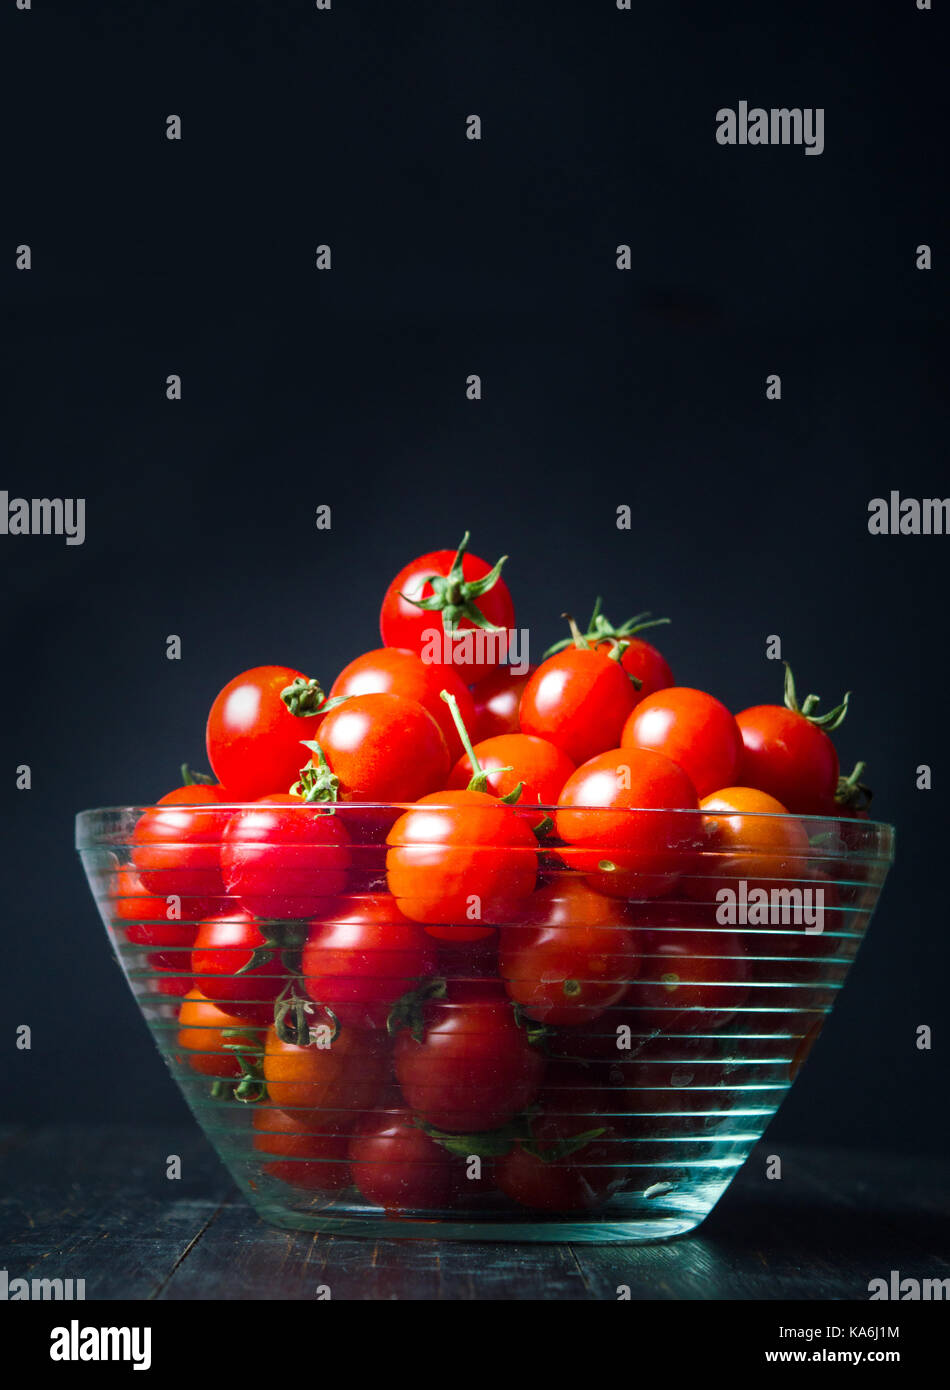 Kirsche Tomaten in eine Schüssel auf dunklem Hintergrund Stockfoto